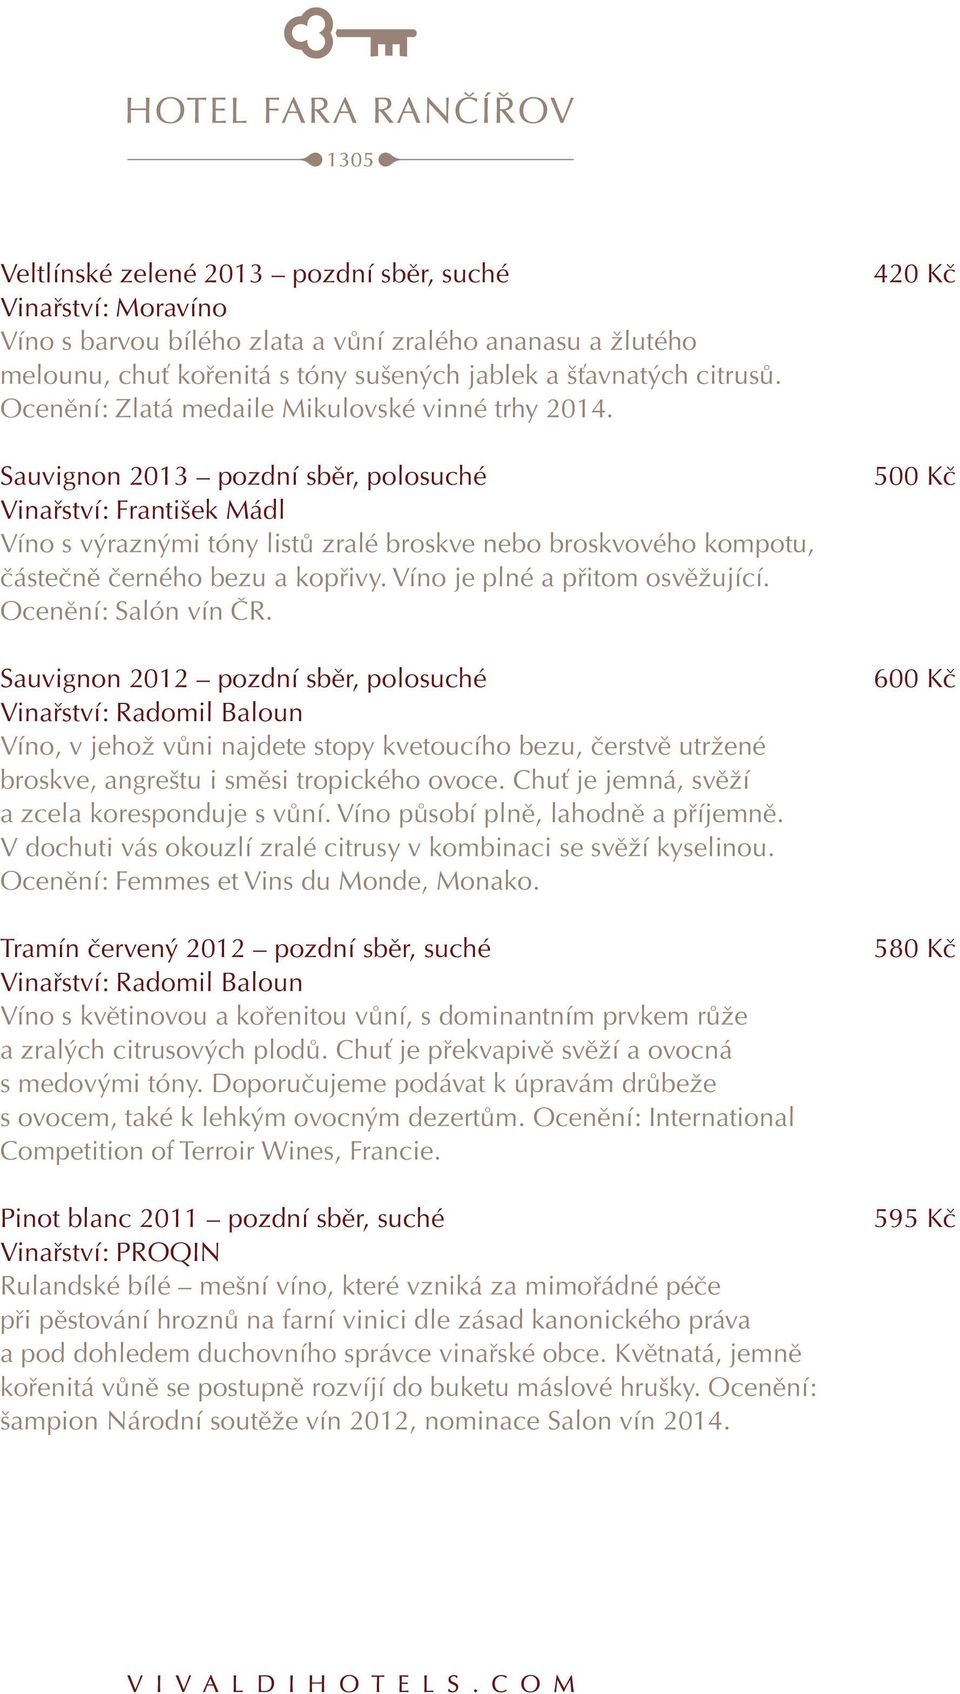 Sauvignon 2013 pozdní sběr, polosuché Vinařství: František Mádl Víno s výraznými tóny listů zralé broskve nebo broskvového kompotu, částečně černého bezu a kopřivy. Víno je plné a přitom osvěžující.